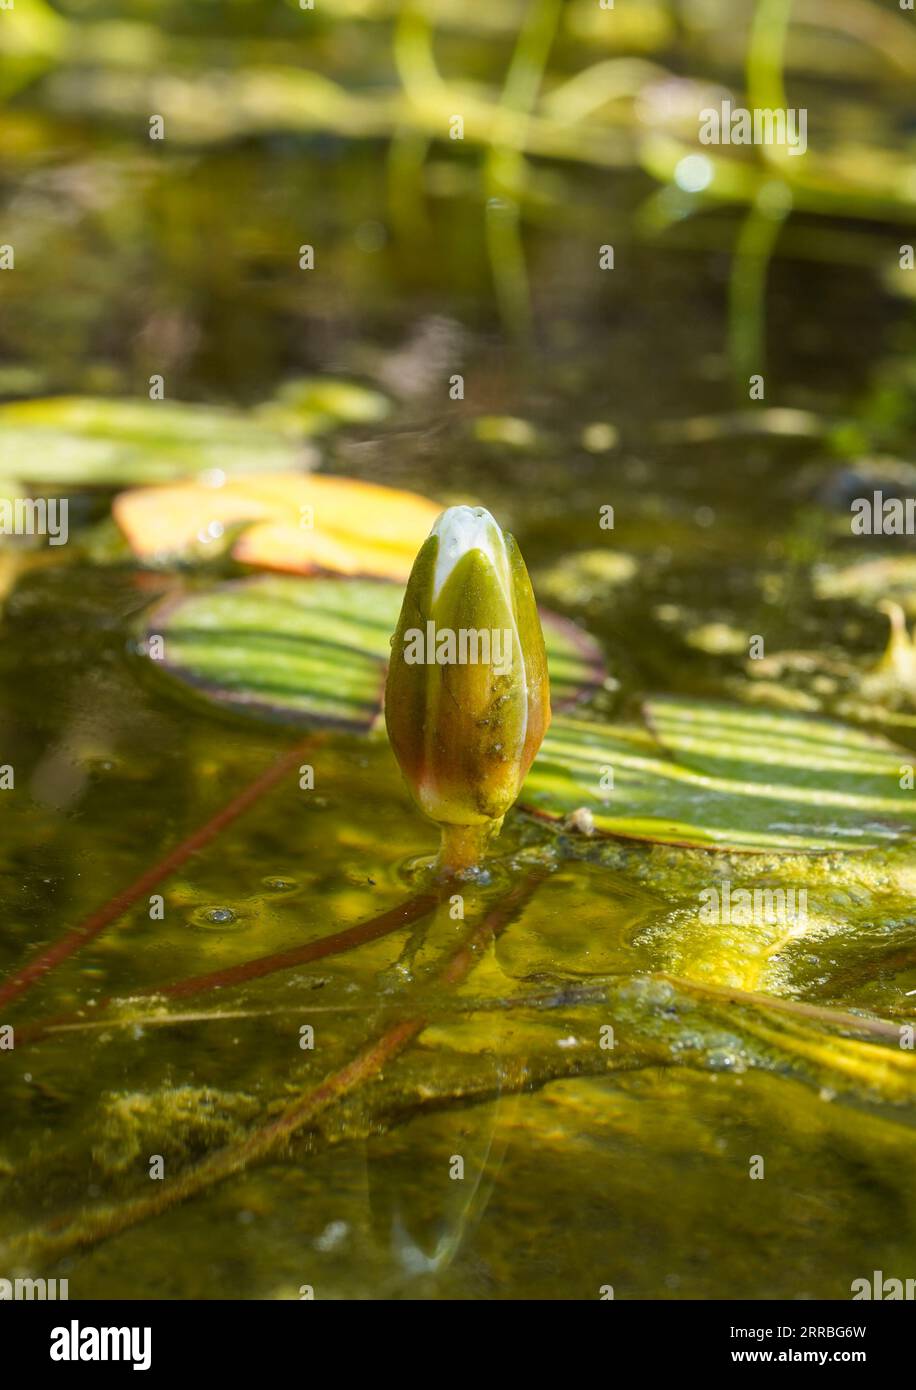 Bourgeon de fleur de nénuphars d'eau blanche sortant de la surface de l'eau dans un étang. Banque D'Images